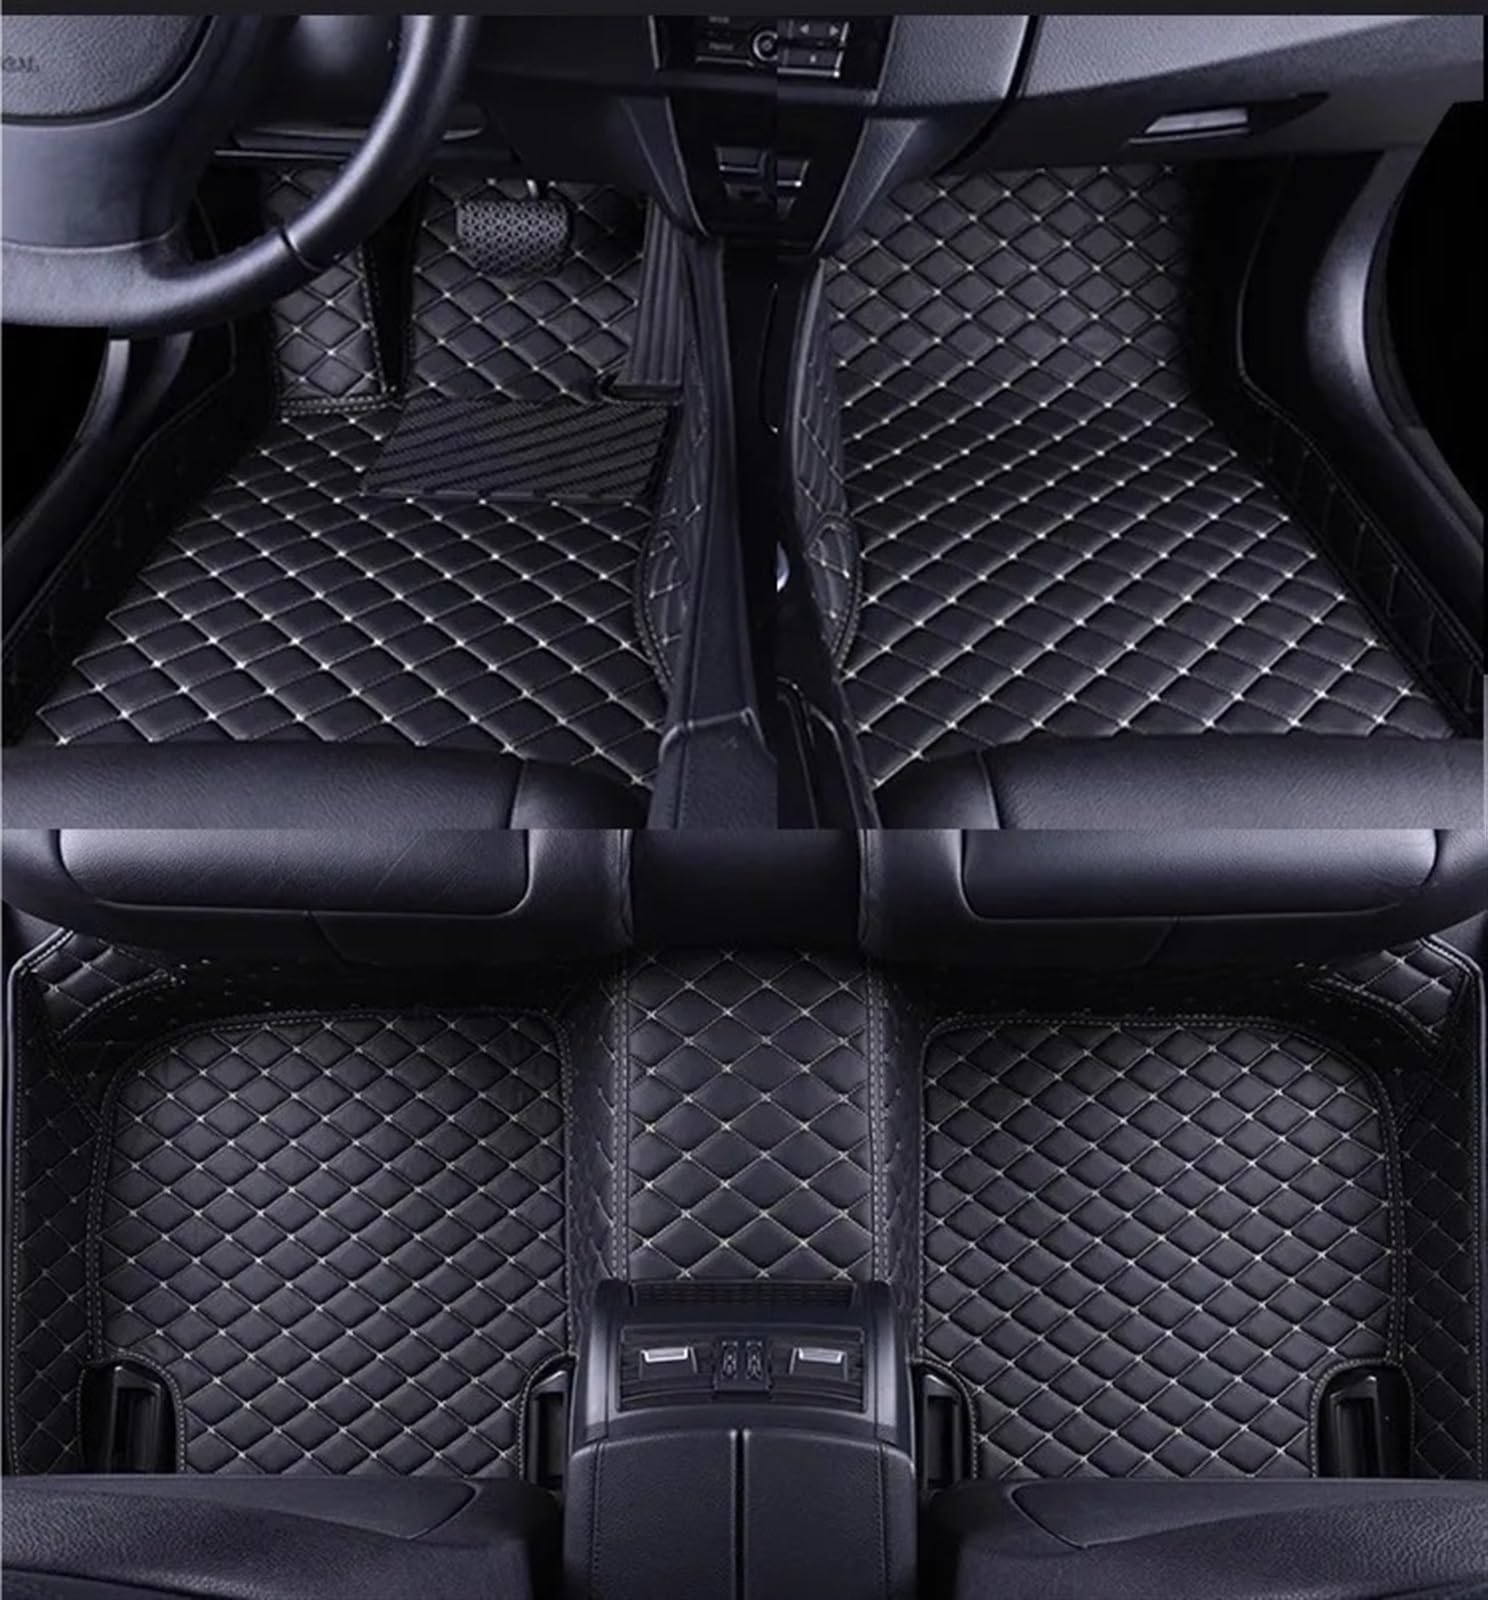 Auto Fußmatten Set Kompatibel Mit VW Für Passat B7 2012 2013 2014 2015 LHD Innenausstattung Benutzerdefinierte 3D-Auto-Fußmatten PU-Fußpolster(Black White 5 Seat) von ZHjLut